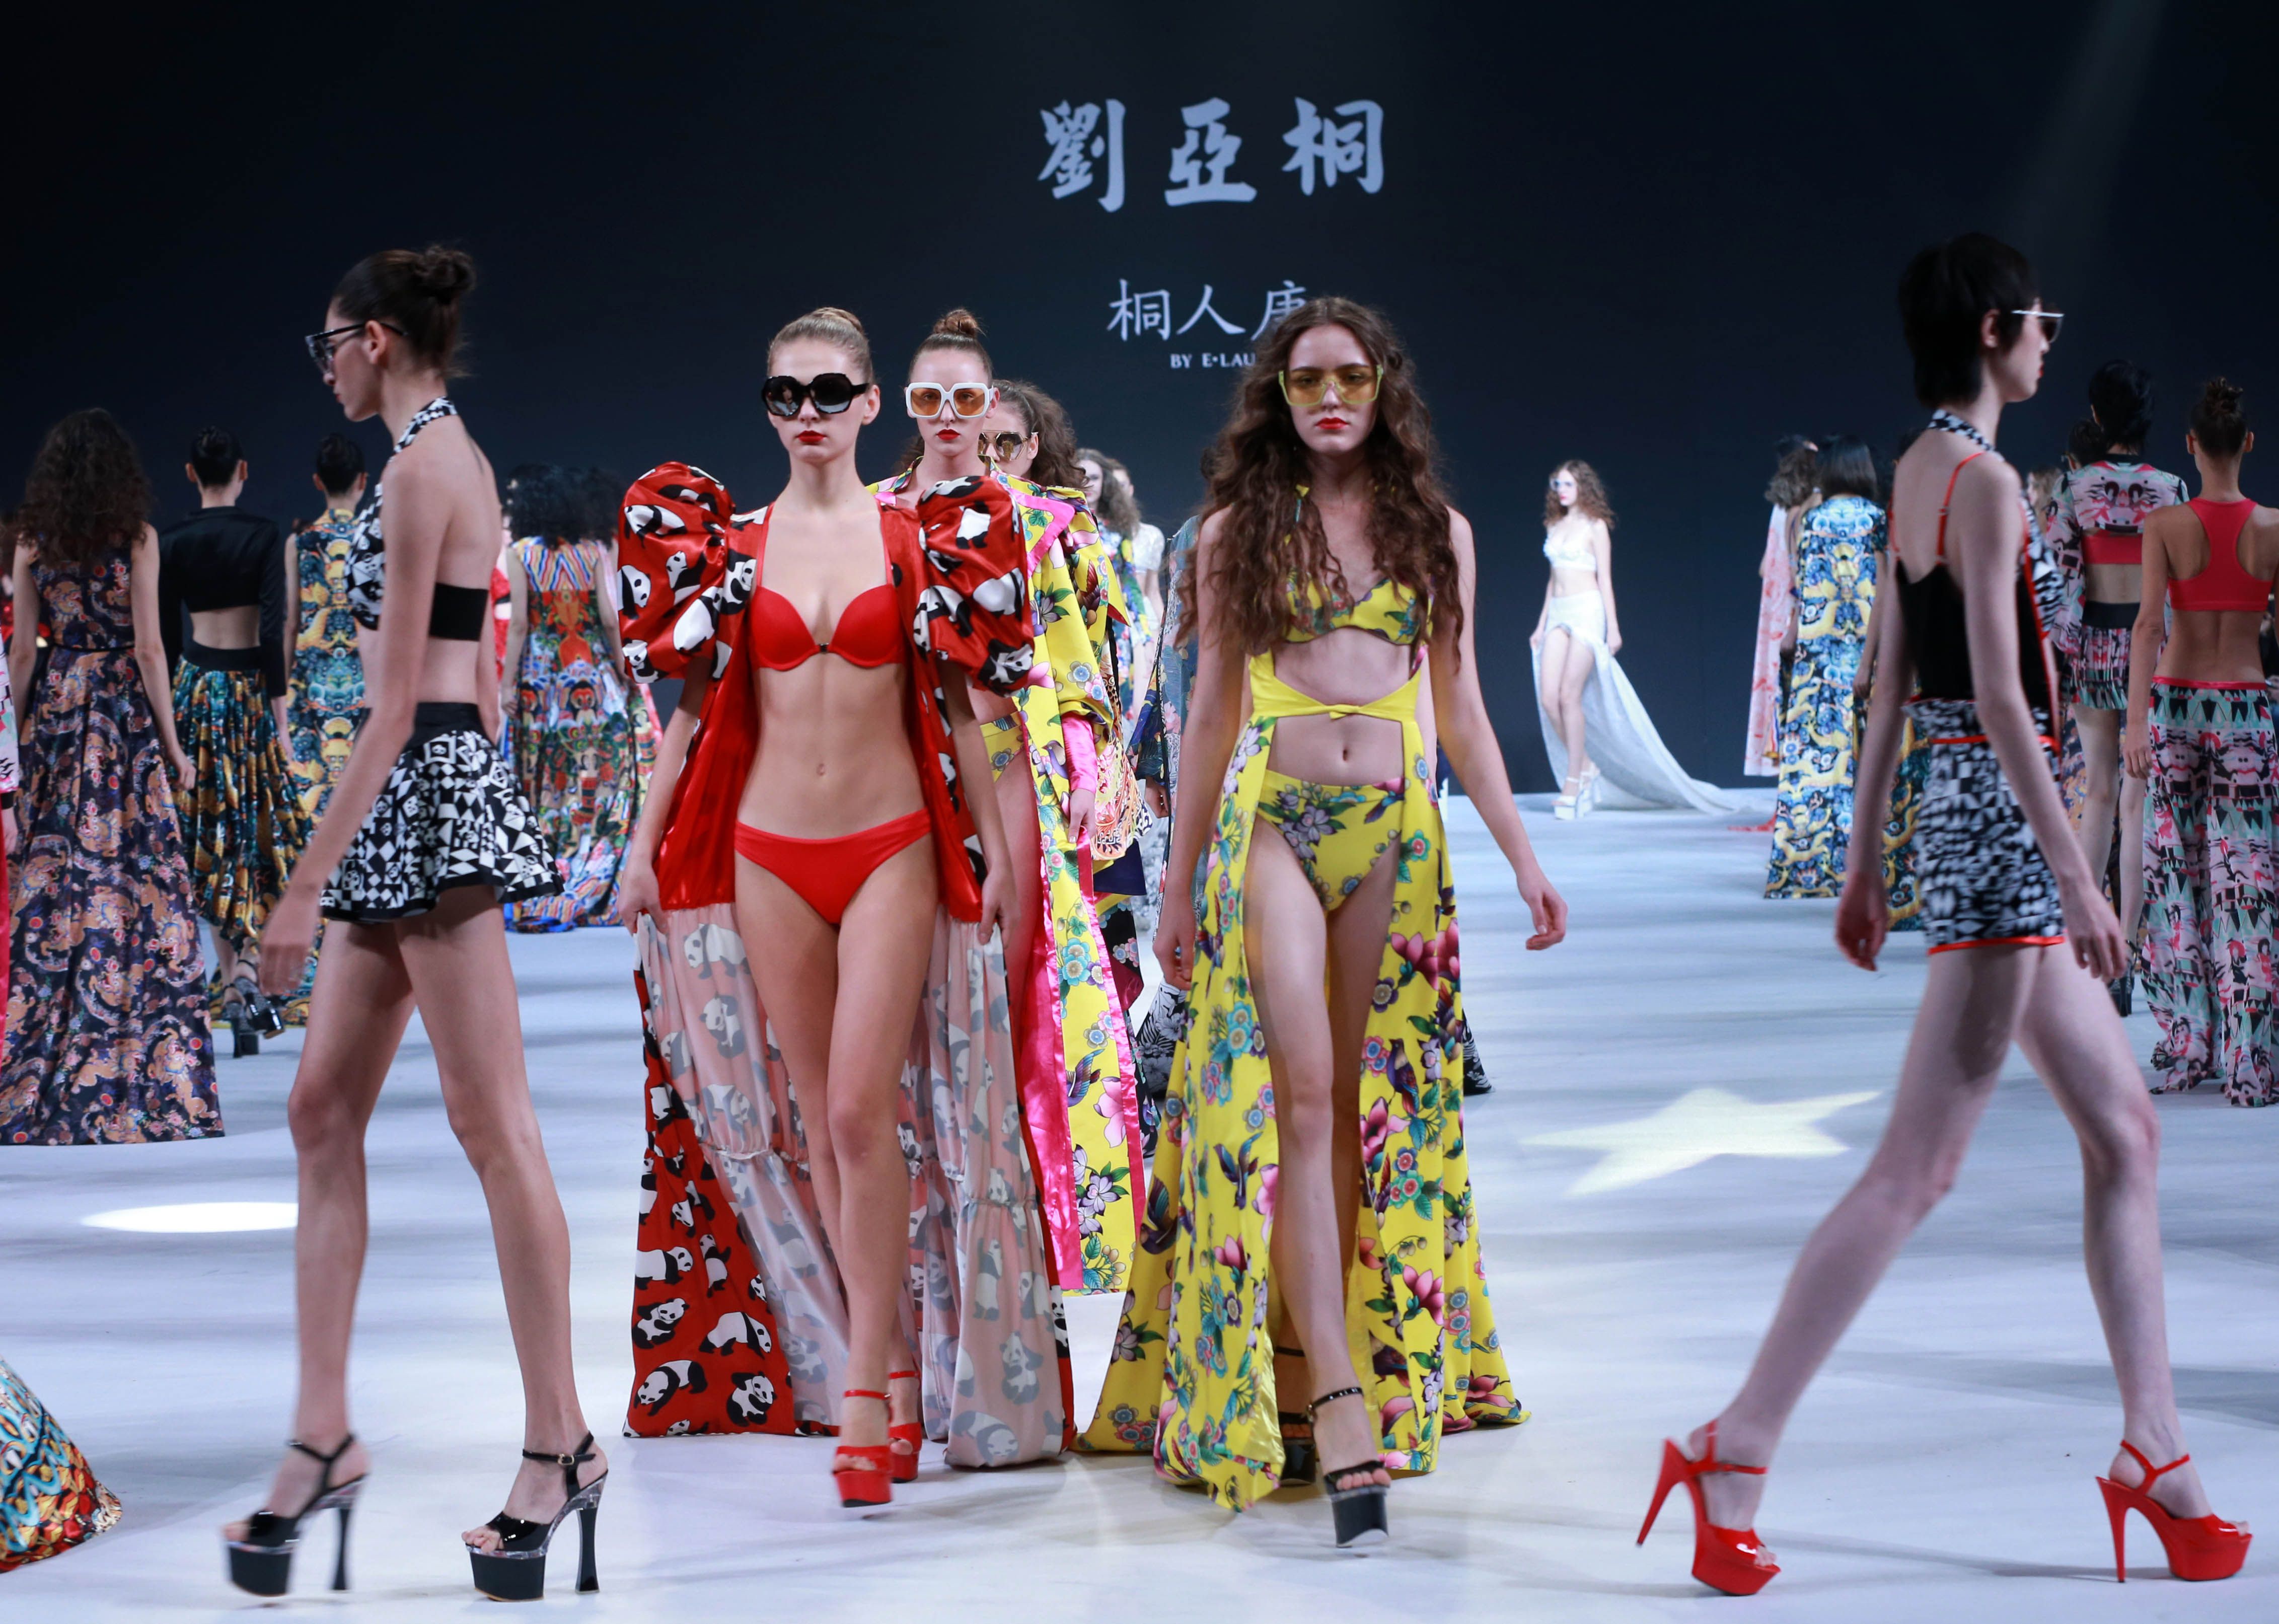 عرض أزياء خلال أسبوع الموضة فى الصين (3)